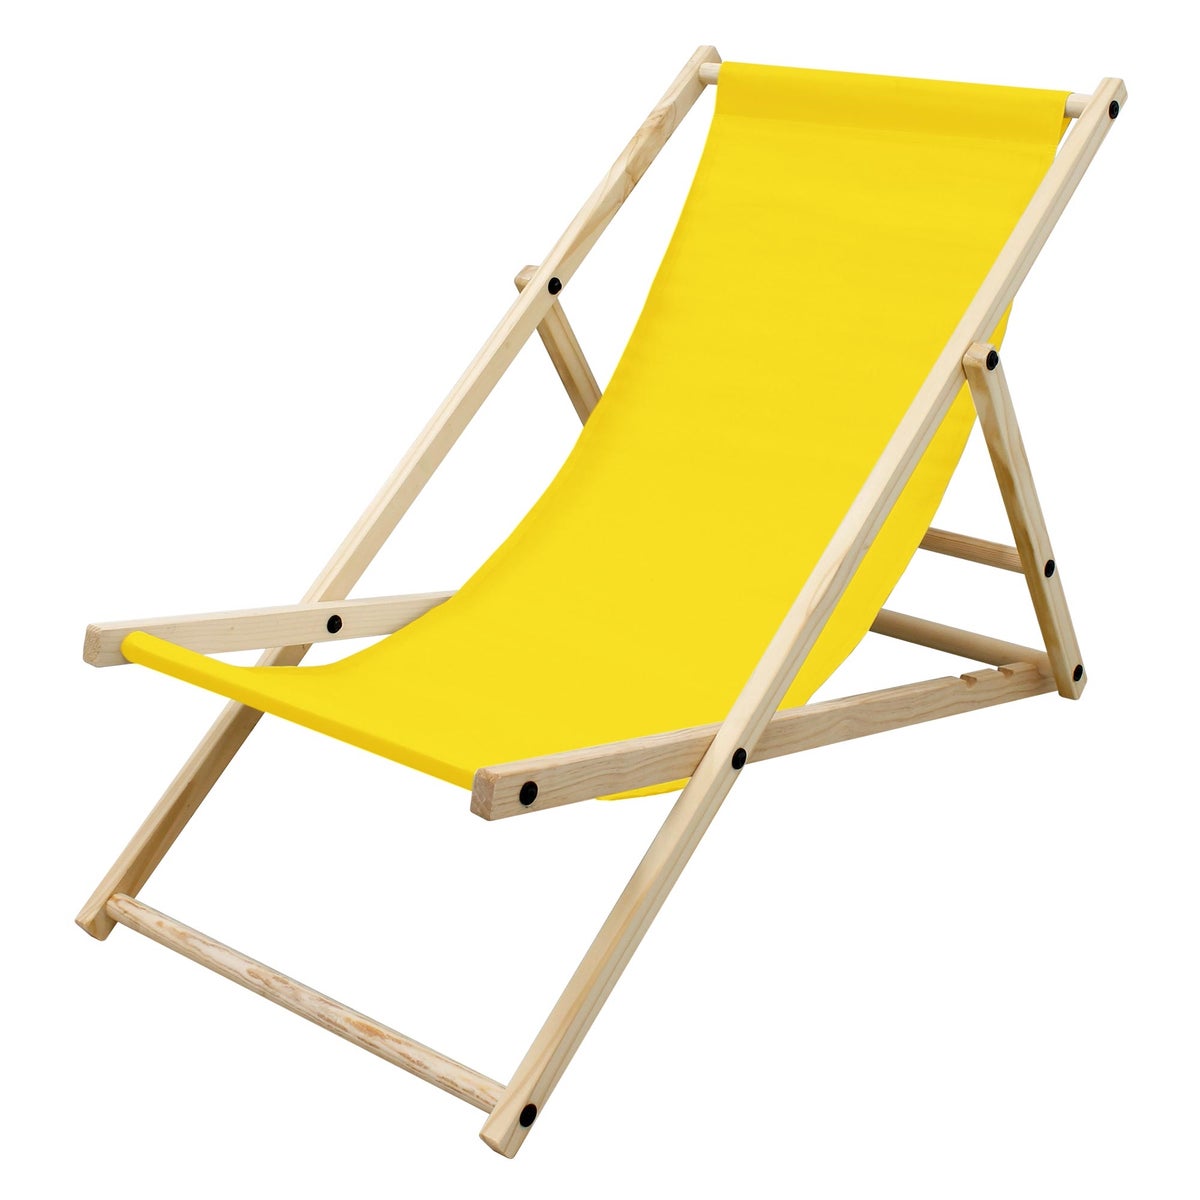 ECD Germany Liegestuhl klappbar, Gelb, aus Holz, verstellbare Rückenlehne, 3 Liegepositionen, bis 120 kg, Sonnenliege Gartenliege Strandliege Strandstuhl Holzklappstuhl, für Garten, Balkon & Strand